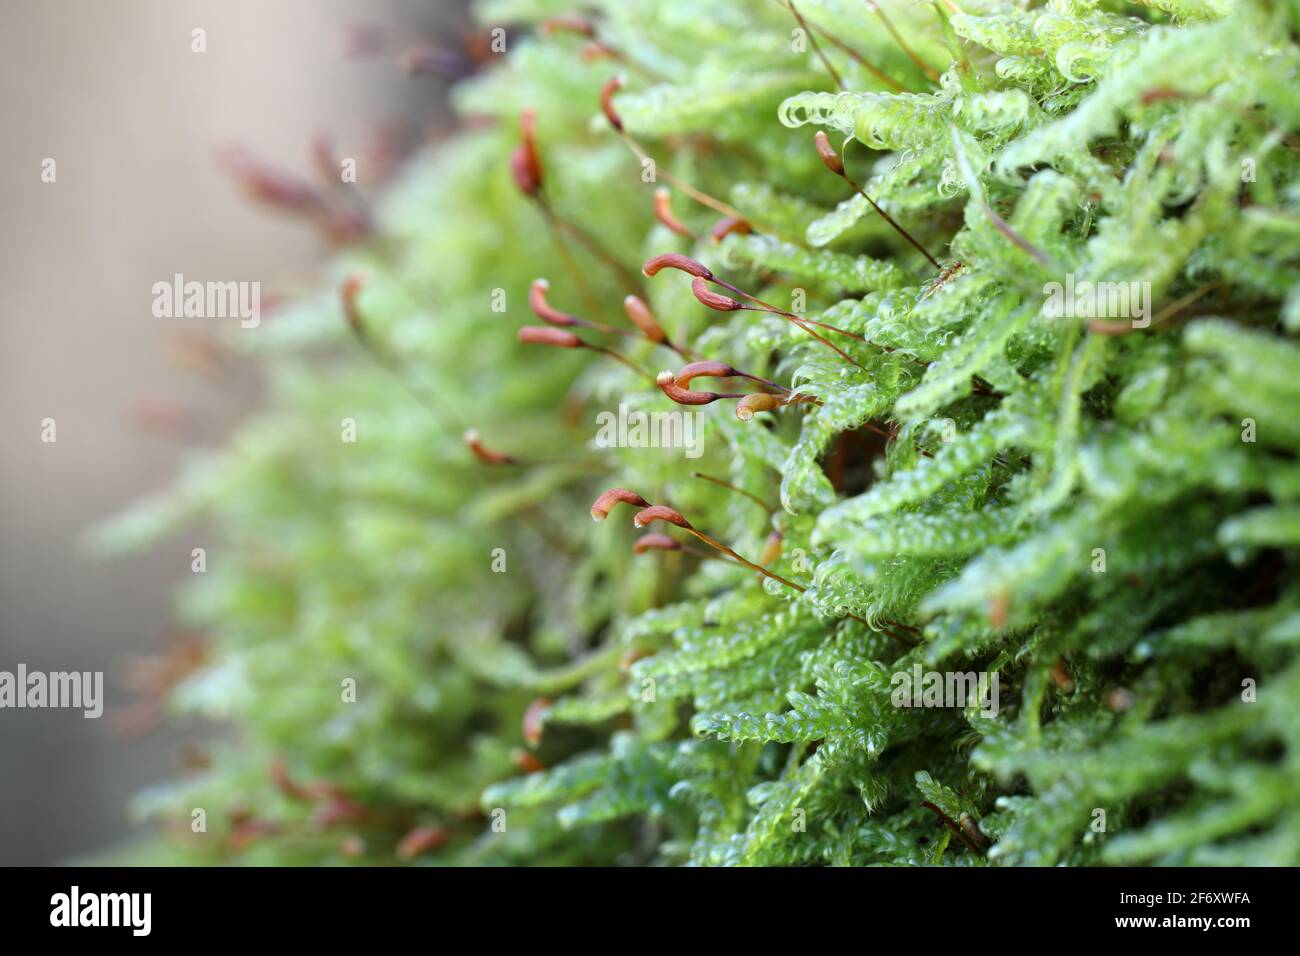 Gros plan vue détaillée de la mousse montrant les têtes de fructification Spore poussant sur une branche, North Pennines, Teesdale, County Durham, Royaume-Uni Banque D'Images